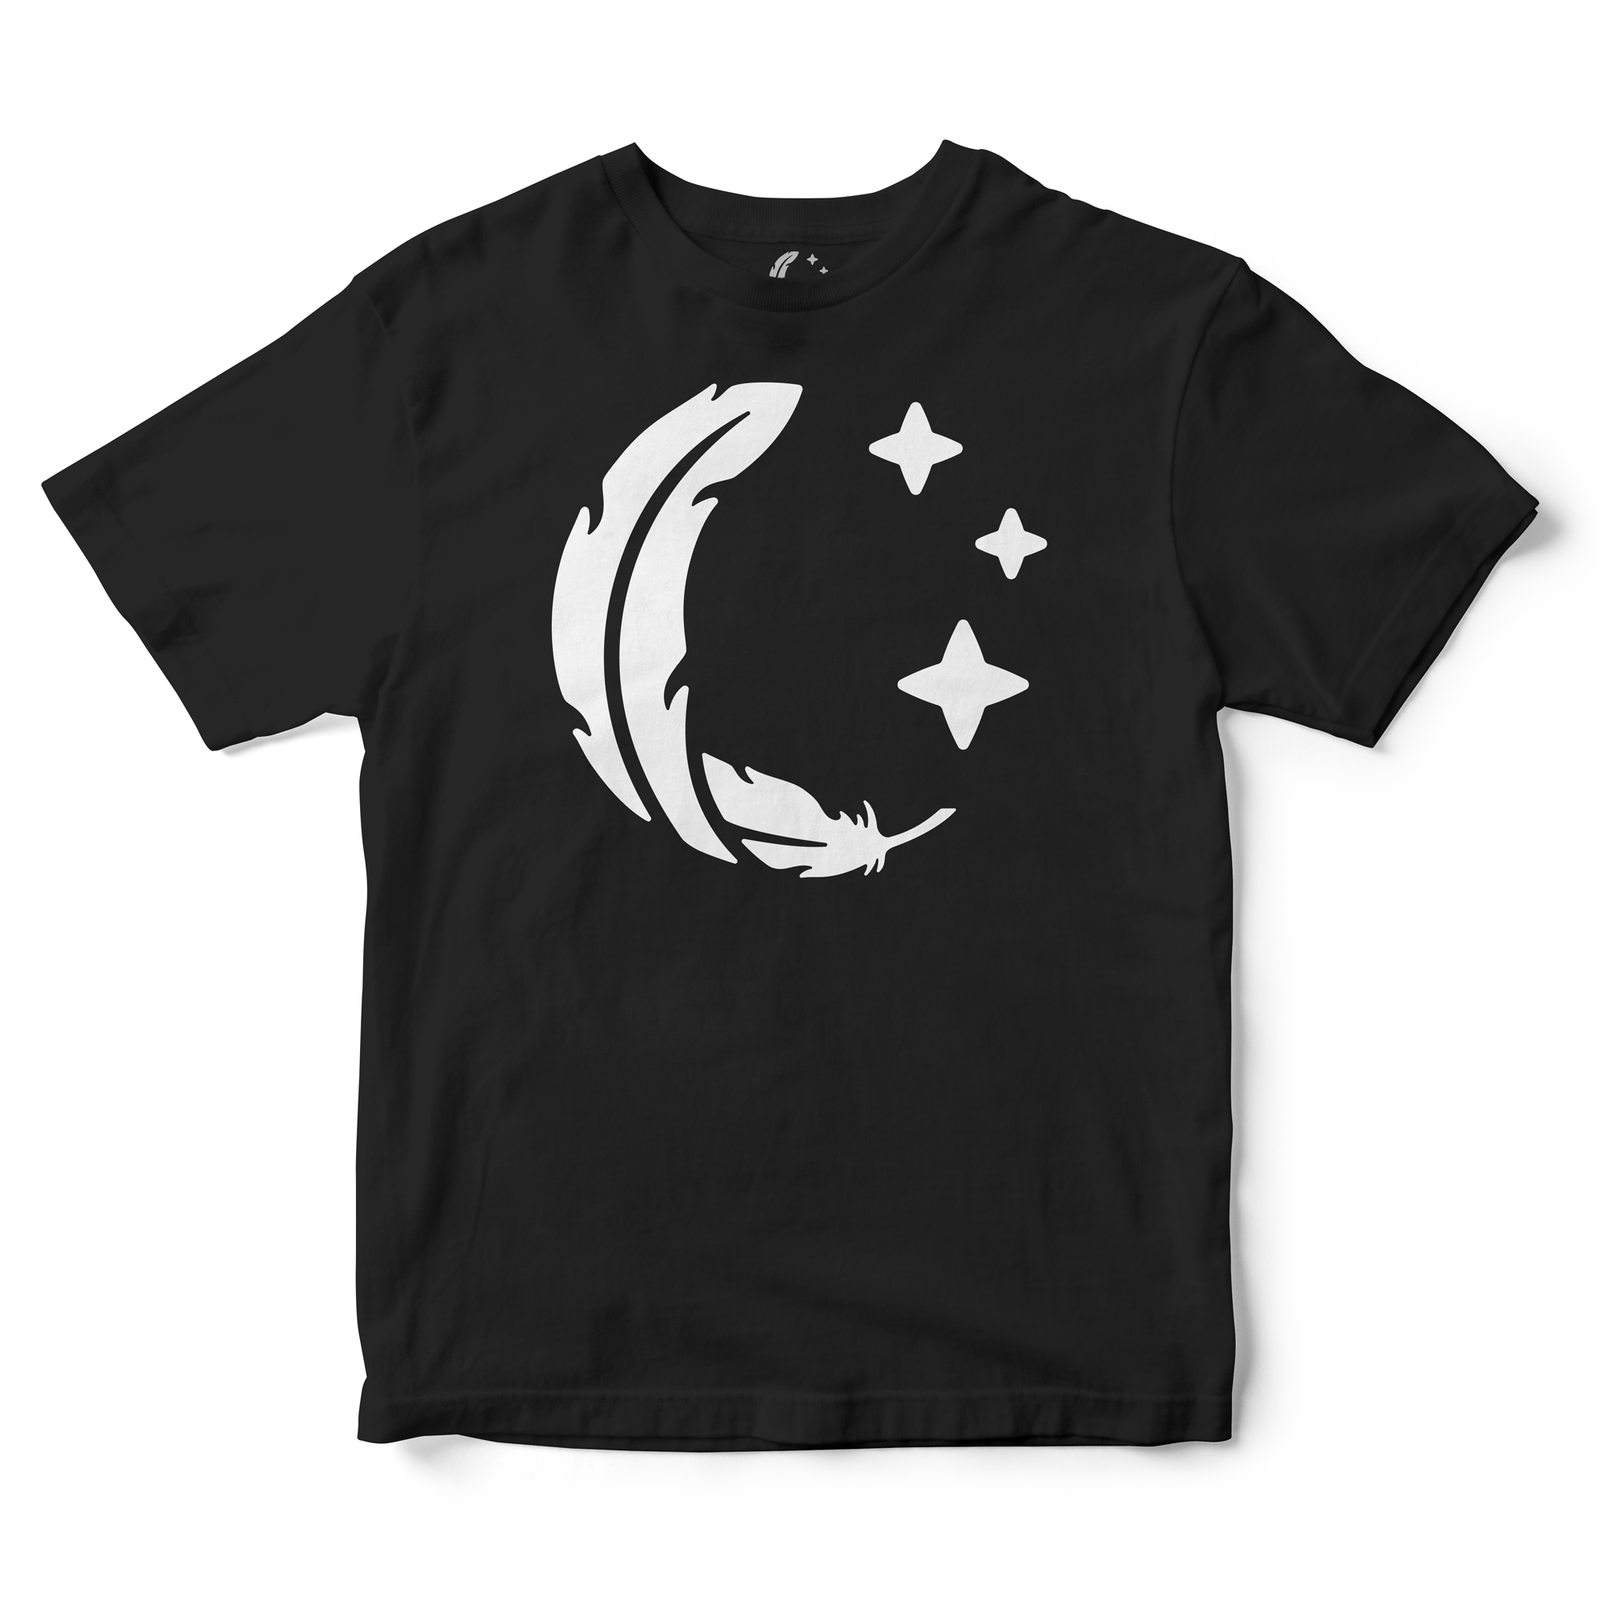 Sparrow Sleeps Logo Adult T-Shirt (Black)